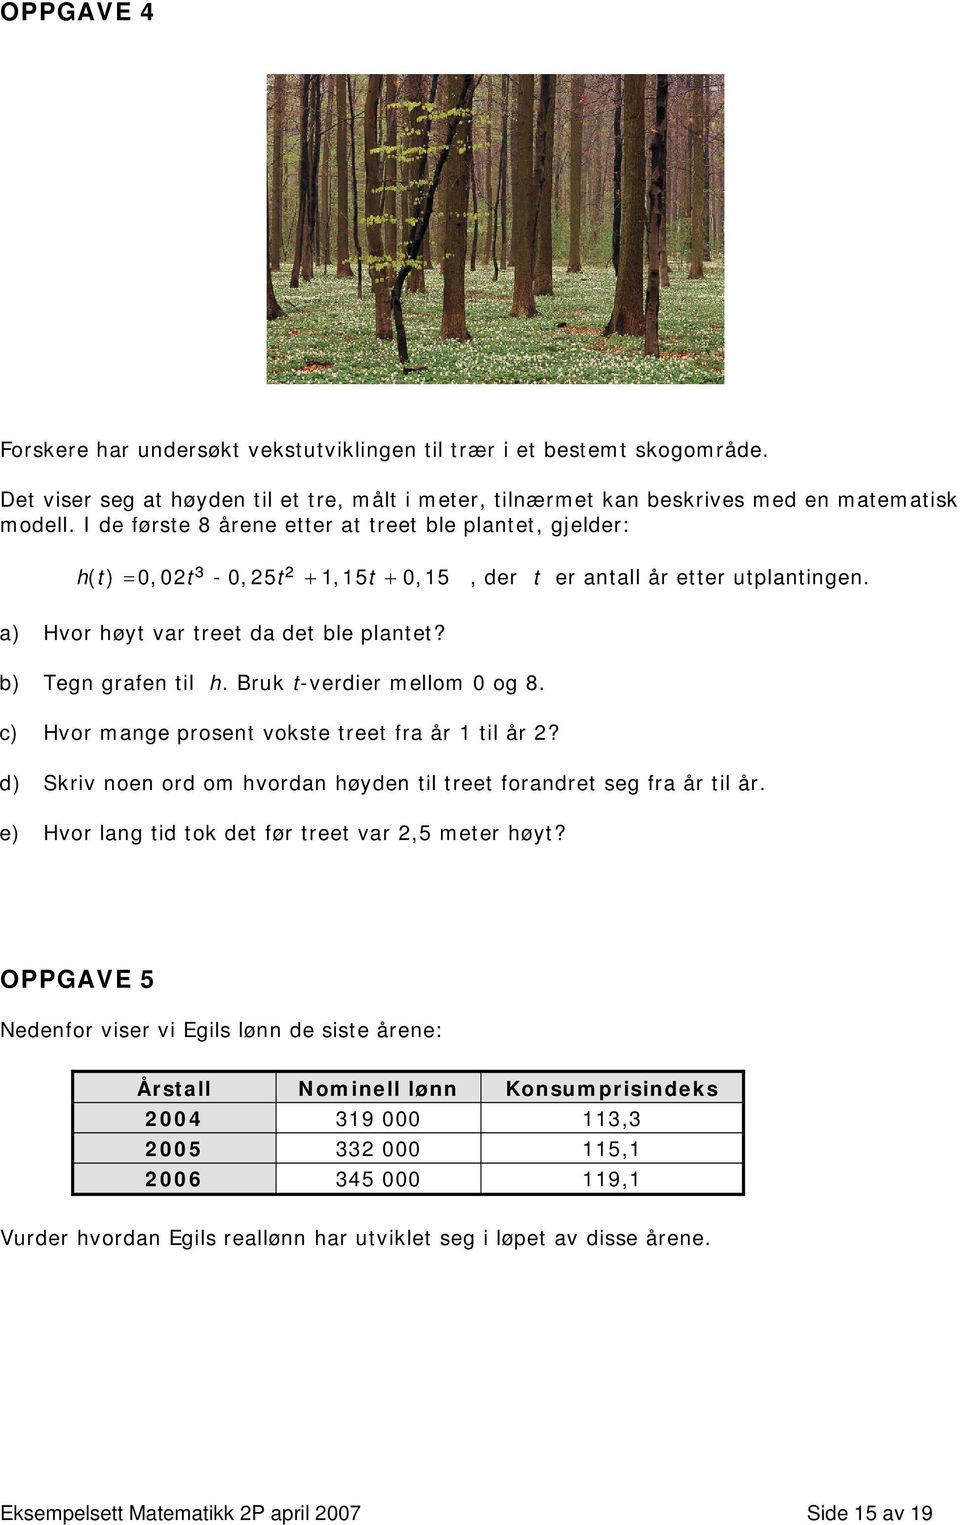 b) Tegn grafen til h. Bruk t-verdier mellom 0 og 8. c) Hvor mange prosent vokste treet fra år 1 til år 2? d) Skriv noen ord om hvordan høyden til treet forandret seg fra år til år.